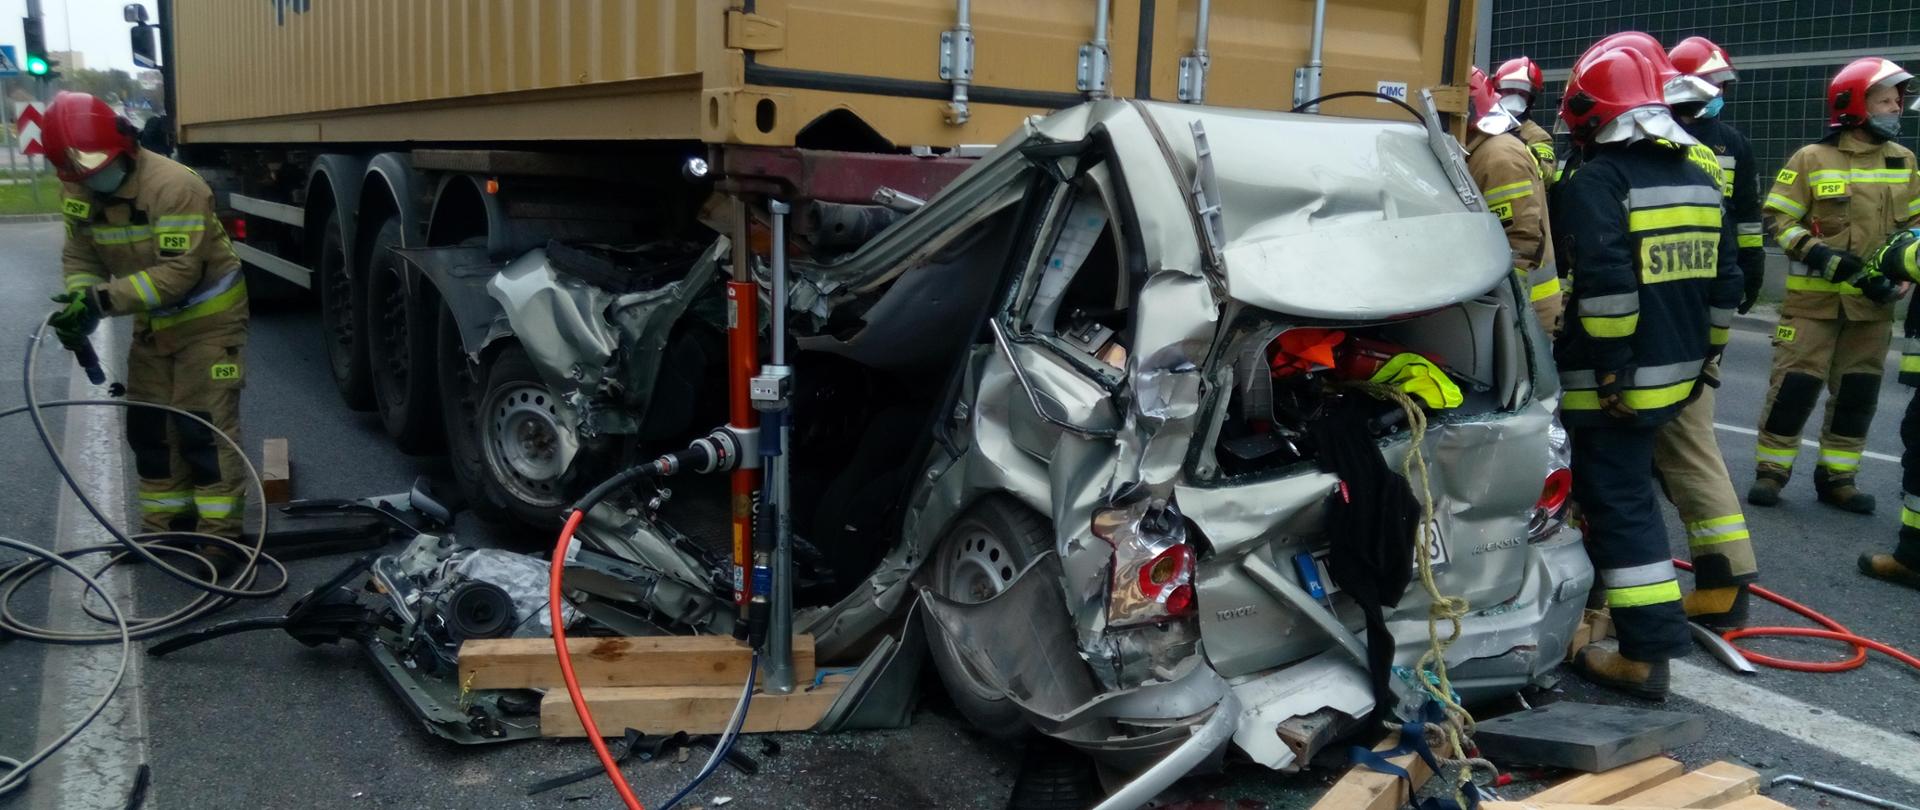 Zdjęcie przedstawia całkowicie zniszczony zamochód osobowy, który znajduje się z tyłu pod naczepą samochodu ciężarowego. Wokół pojazdów znajdują się strażacy, którzy wykonują swoje zadania.